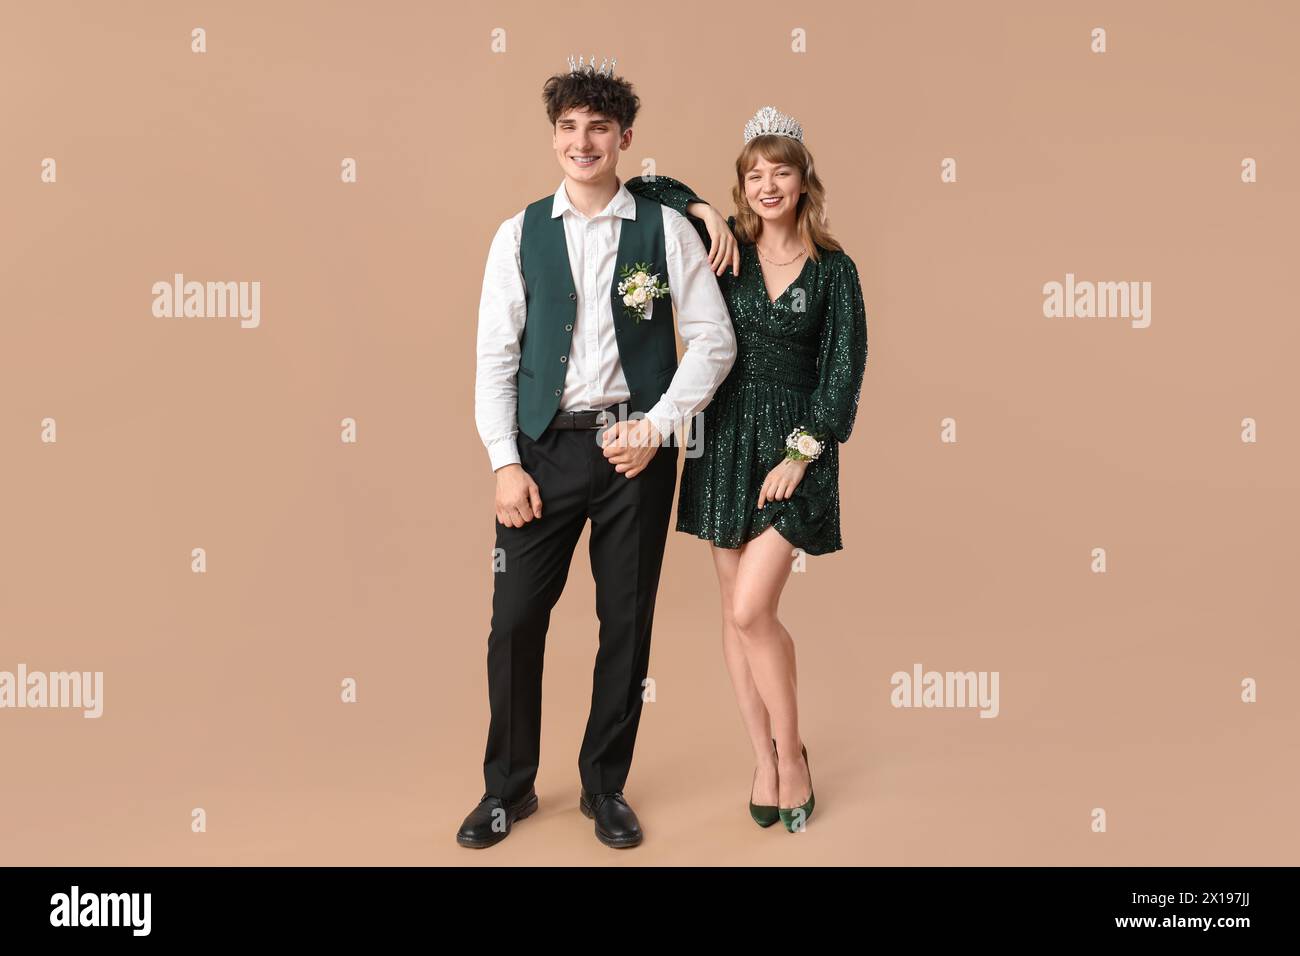 Glückliches Abschlussball-Paar mit Kronen auf beigefarbenem Hintergrund Stockfoto